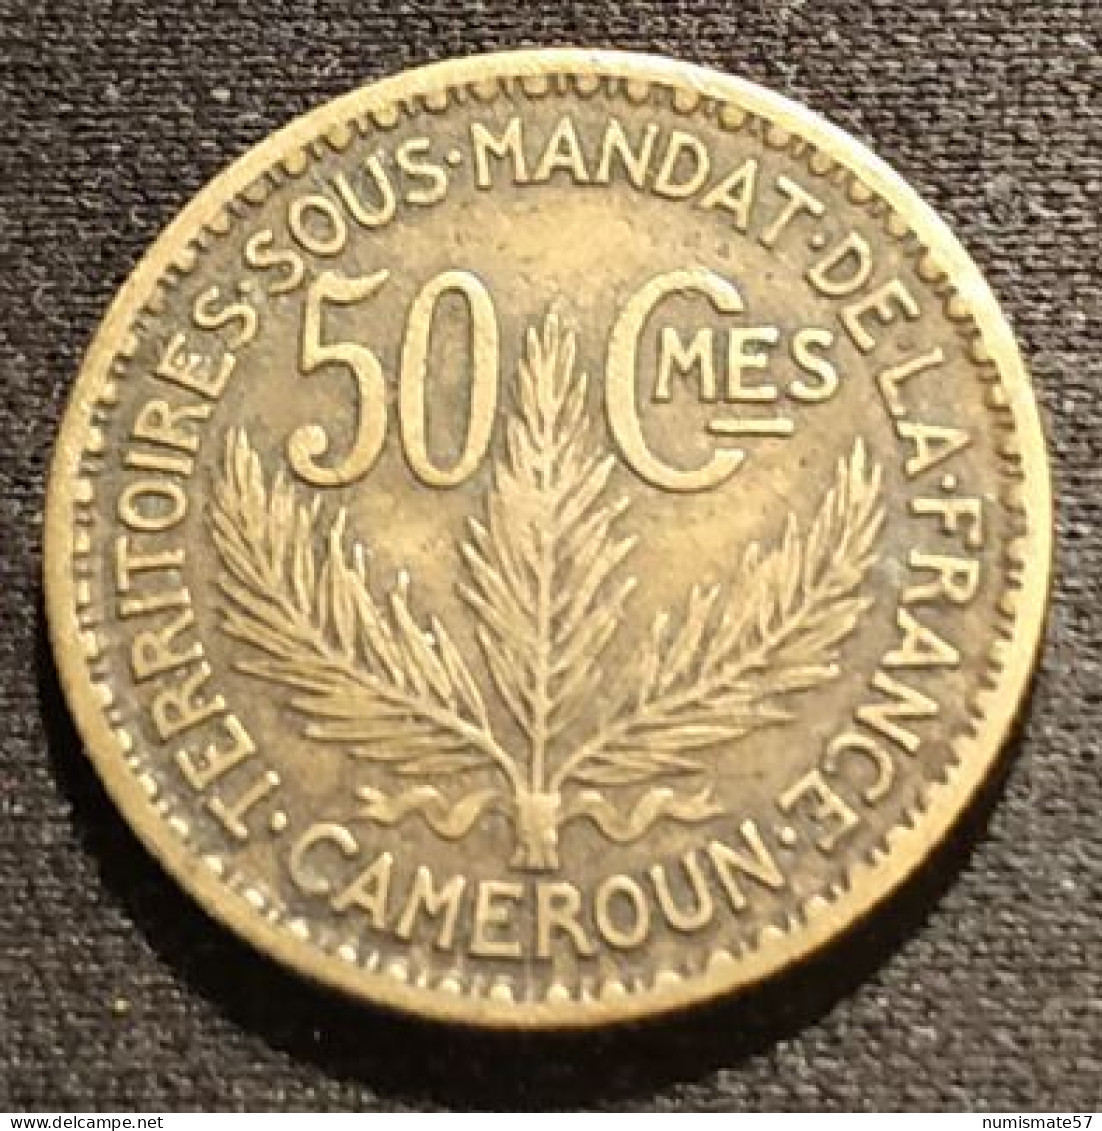 RARE - CAMEROUN - 50 CENTIMES 1925 - KM 1 - TERRITOIRES SOUS MANDAT DE LA FRANCE - Kameroen